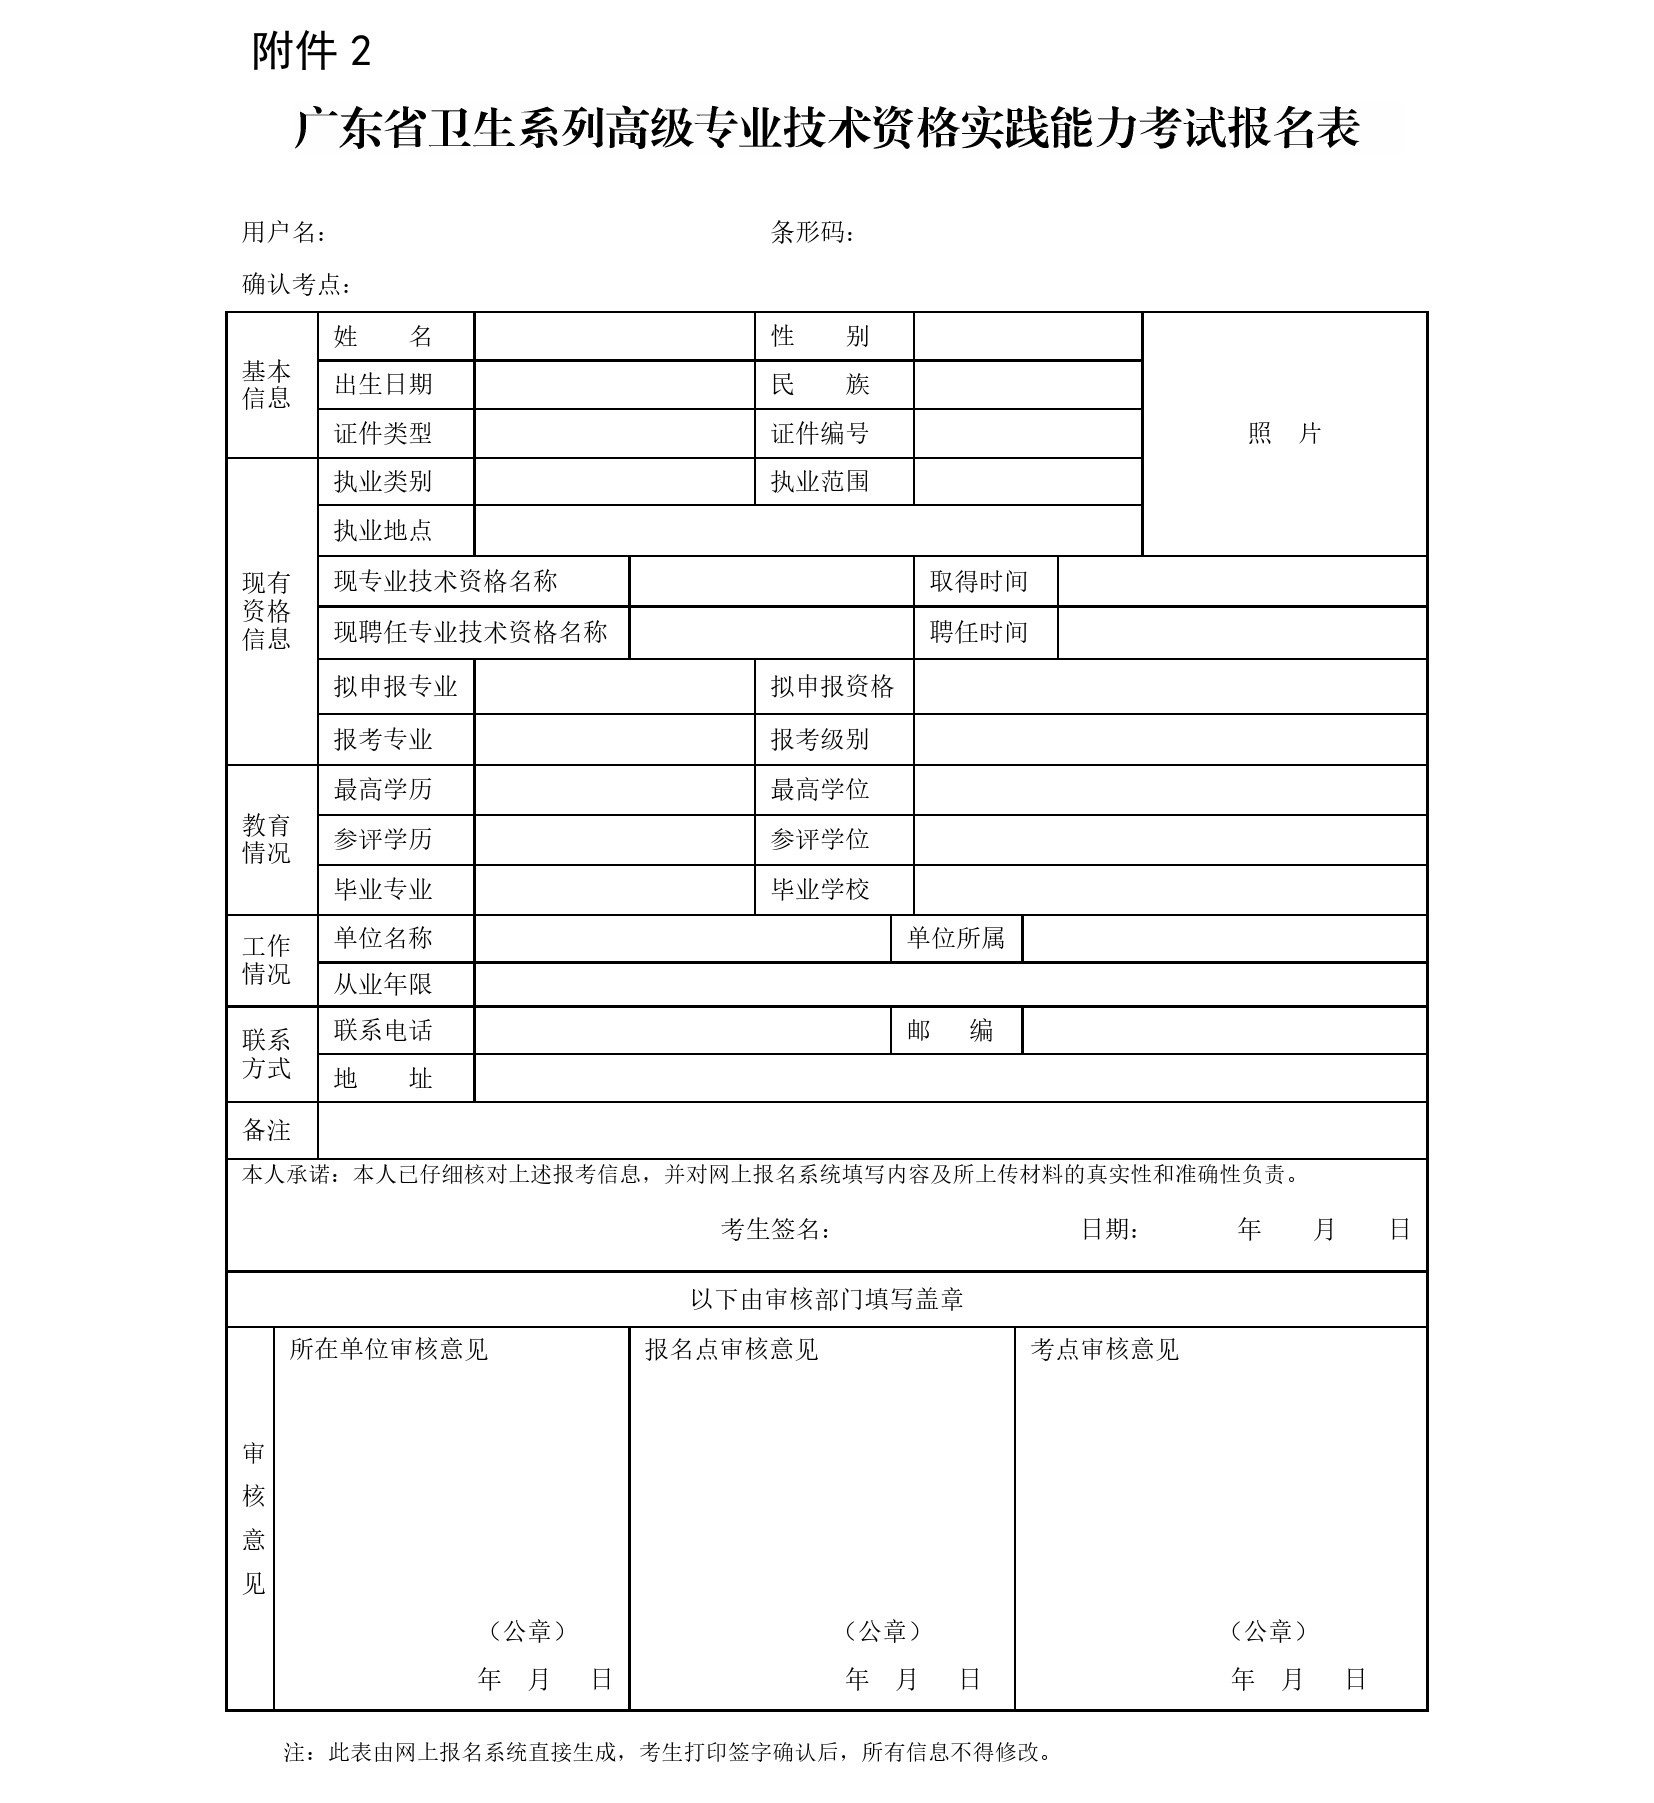 广东省2018年卫生系列高级专业技术资格实践能力考试工作通知